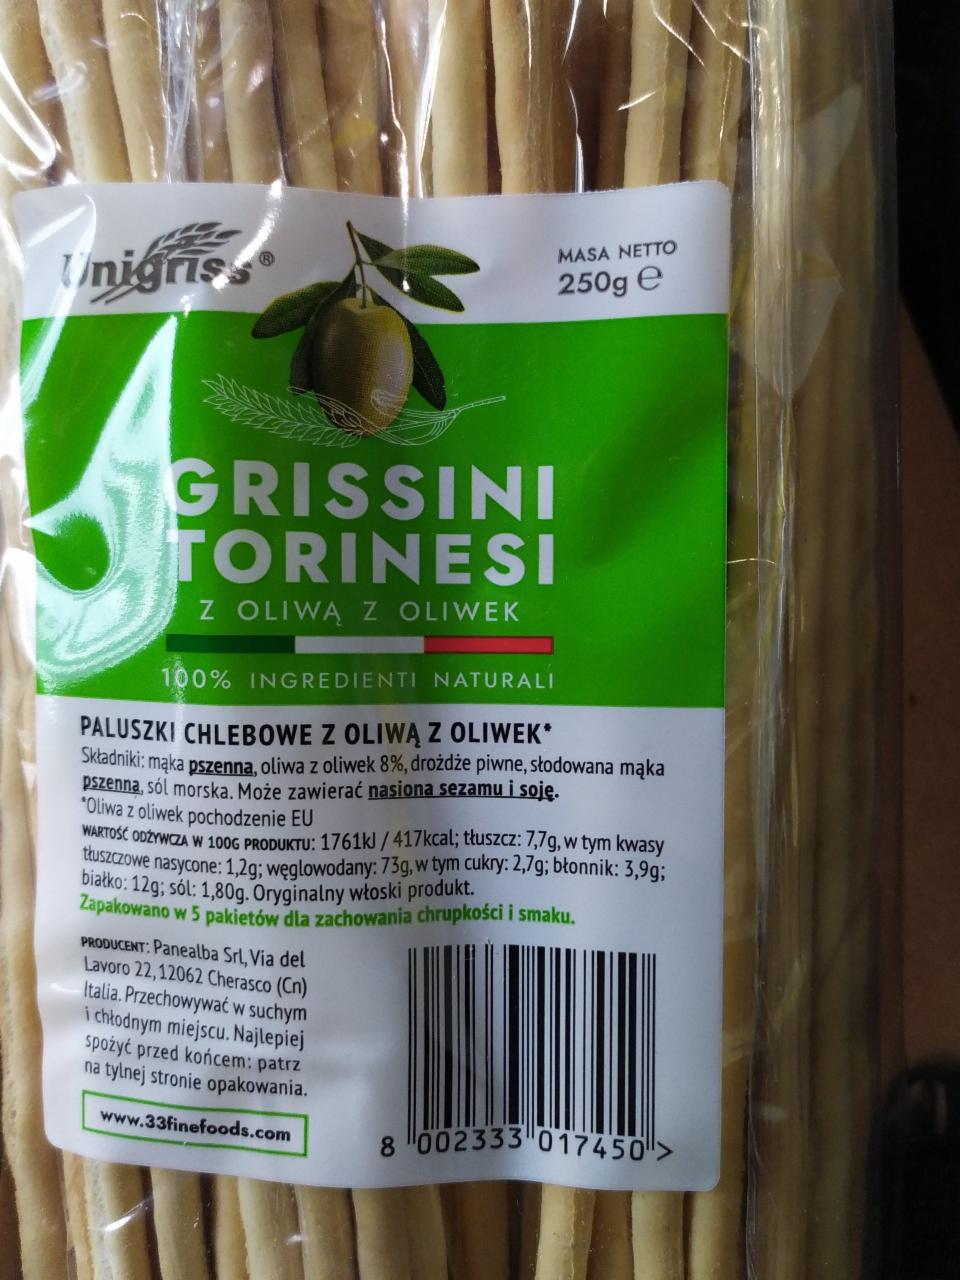 Fotografie - Grissini Torinesi z oliwą z oliwek Unigriss